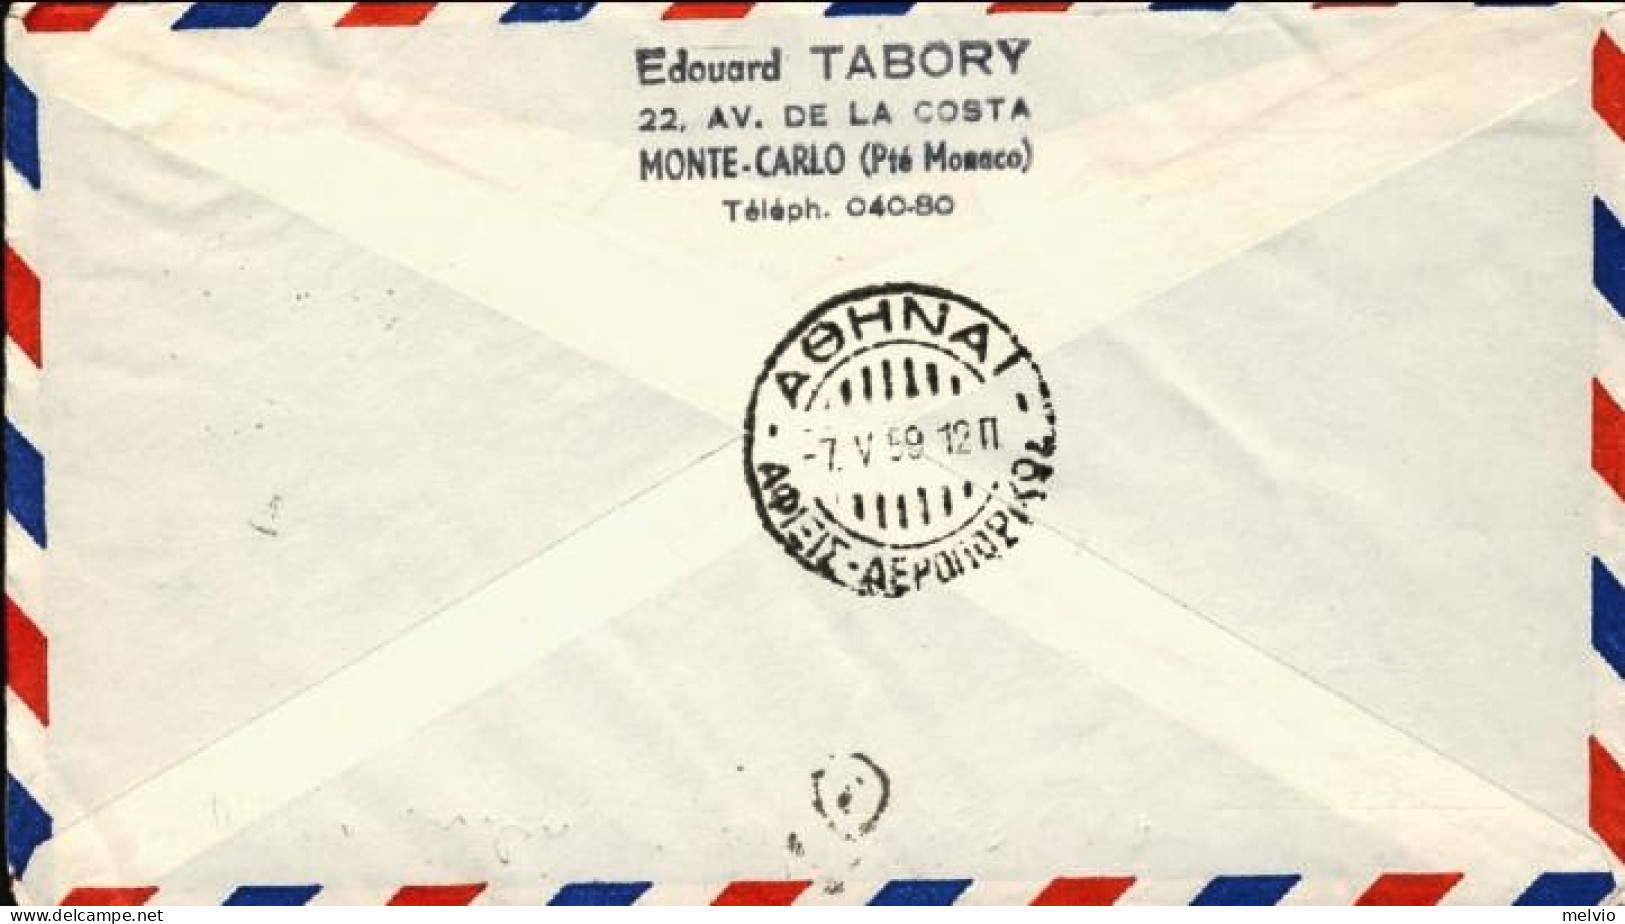 1959-Monaco Bollo Viola I^volo Air France Caravelle Montecarlo-Atene Del 6 Maggi - Covers & Documents